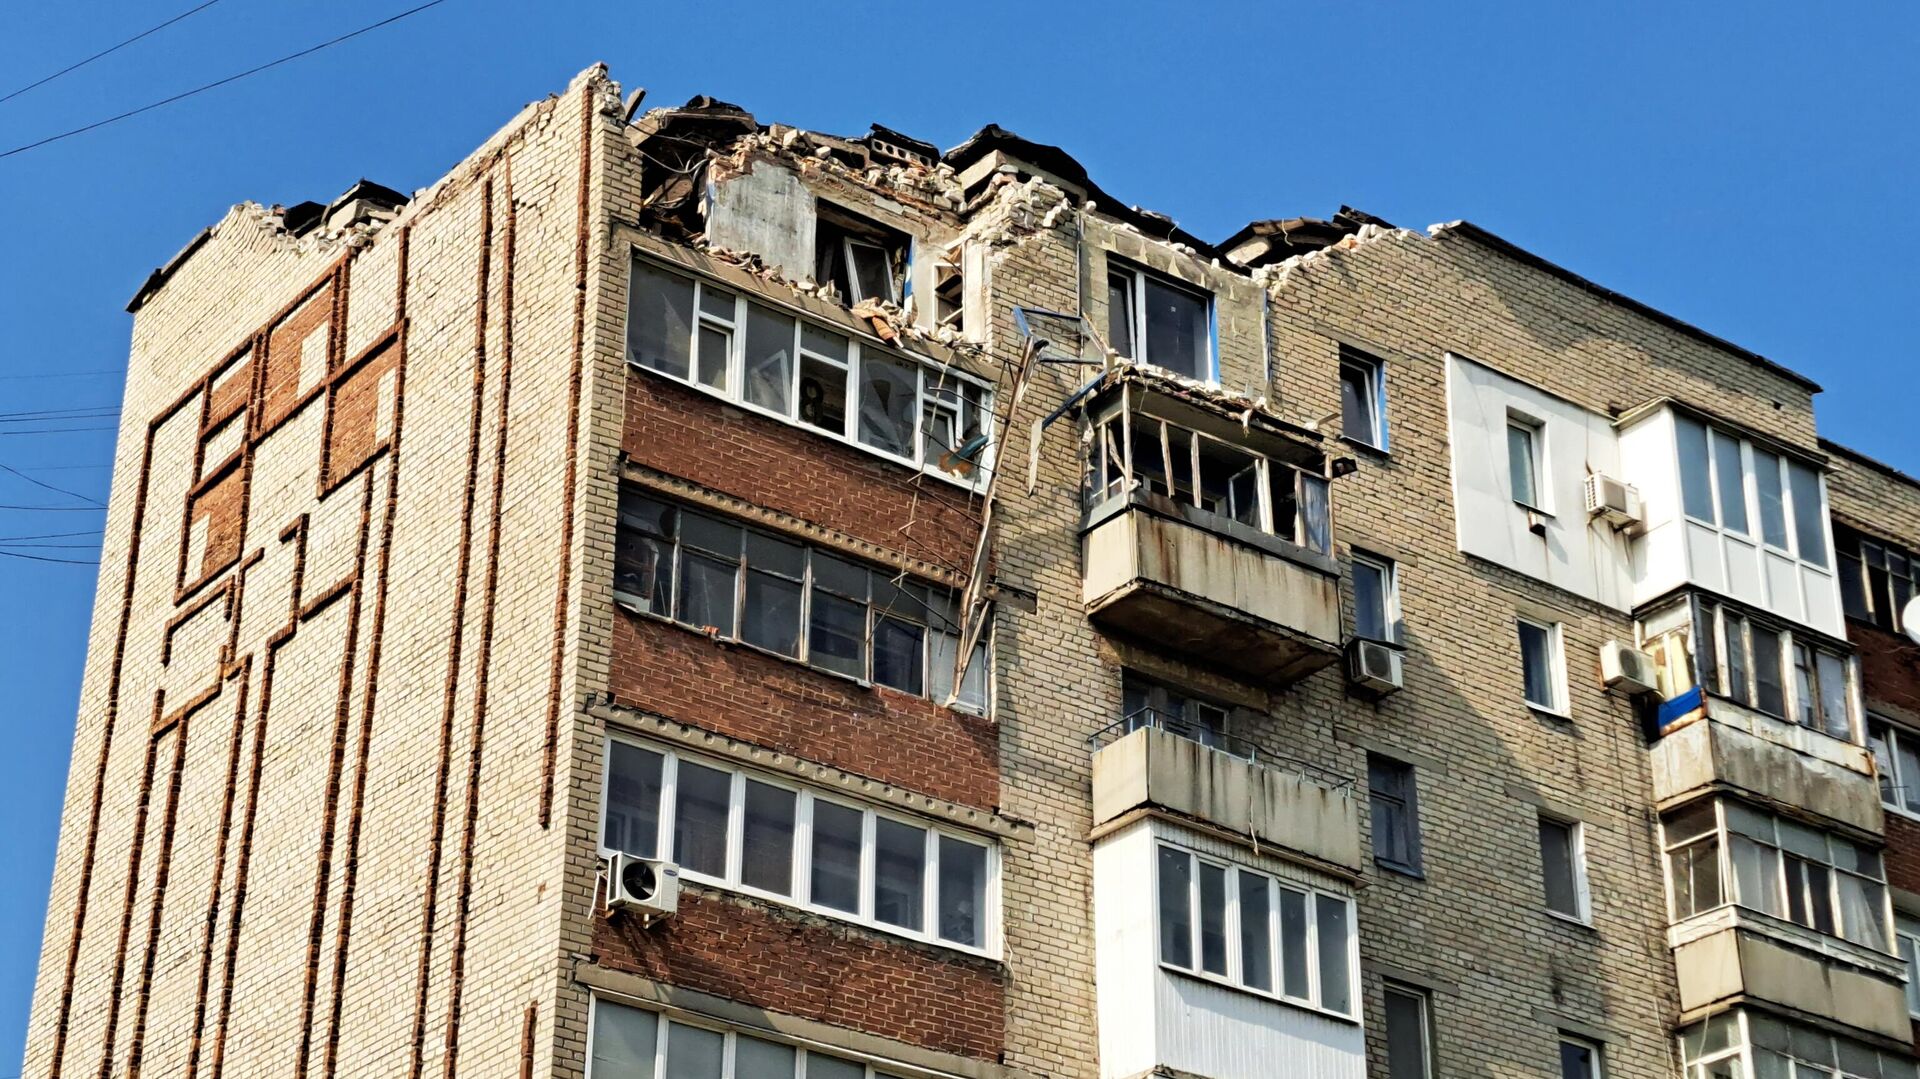 Многоквартирный дом, поврежденный в результате обстрела со стороны ВСУ города Ясиноватая - РИА Новости, 1920, 01.07.2023